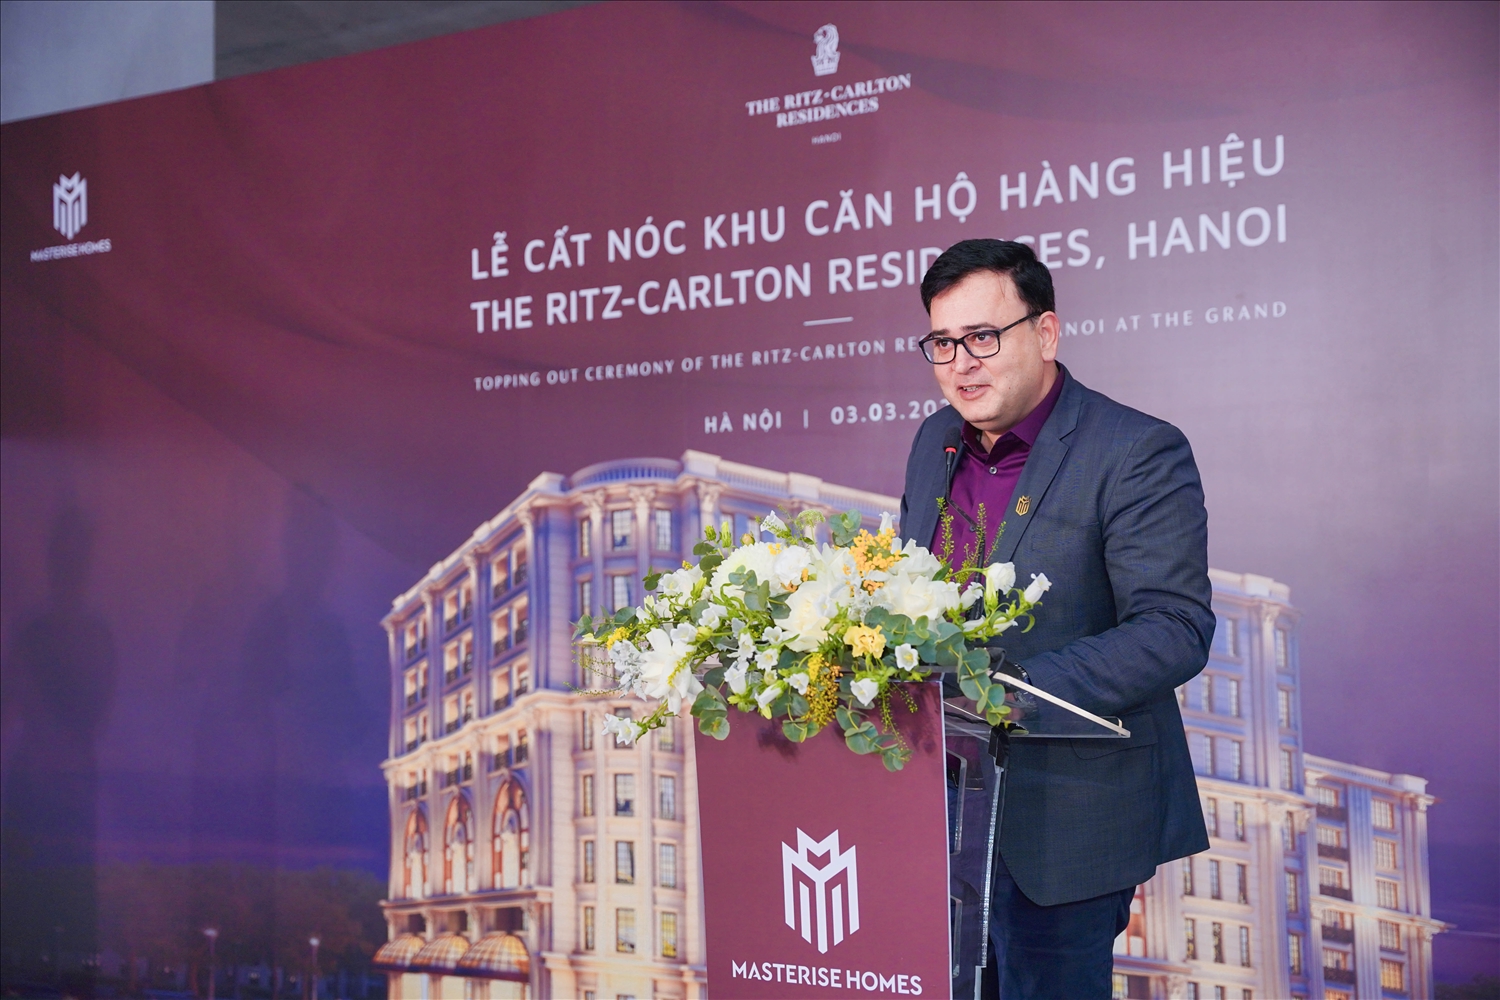 Khu căn hộ hàng hiệu Ritz-Carlton Residences, Hanoi cất nóc 3